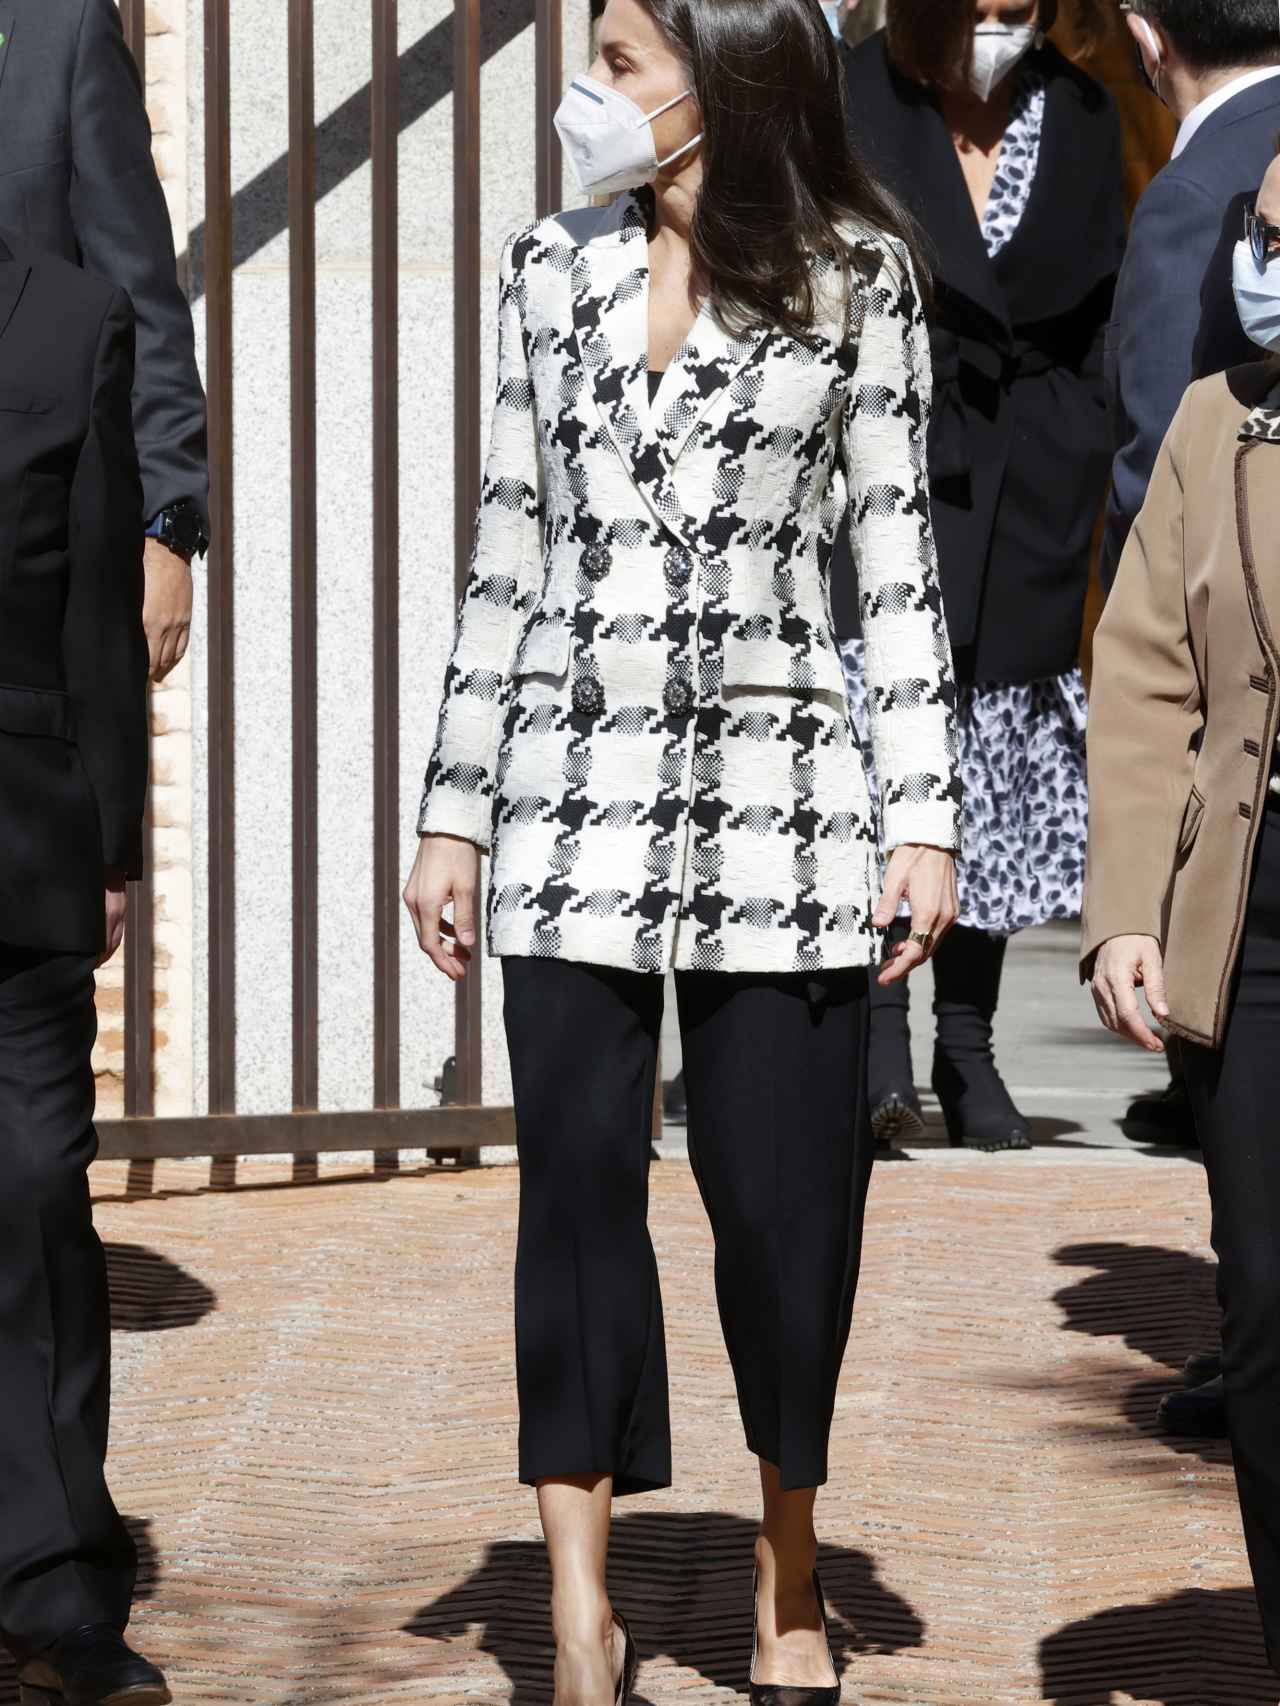 La Reina con un total look en blanco y negro.